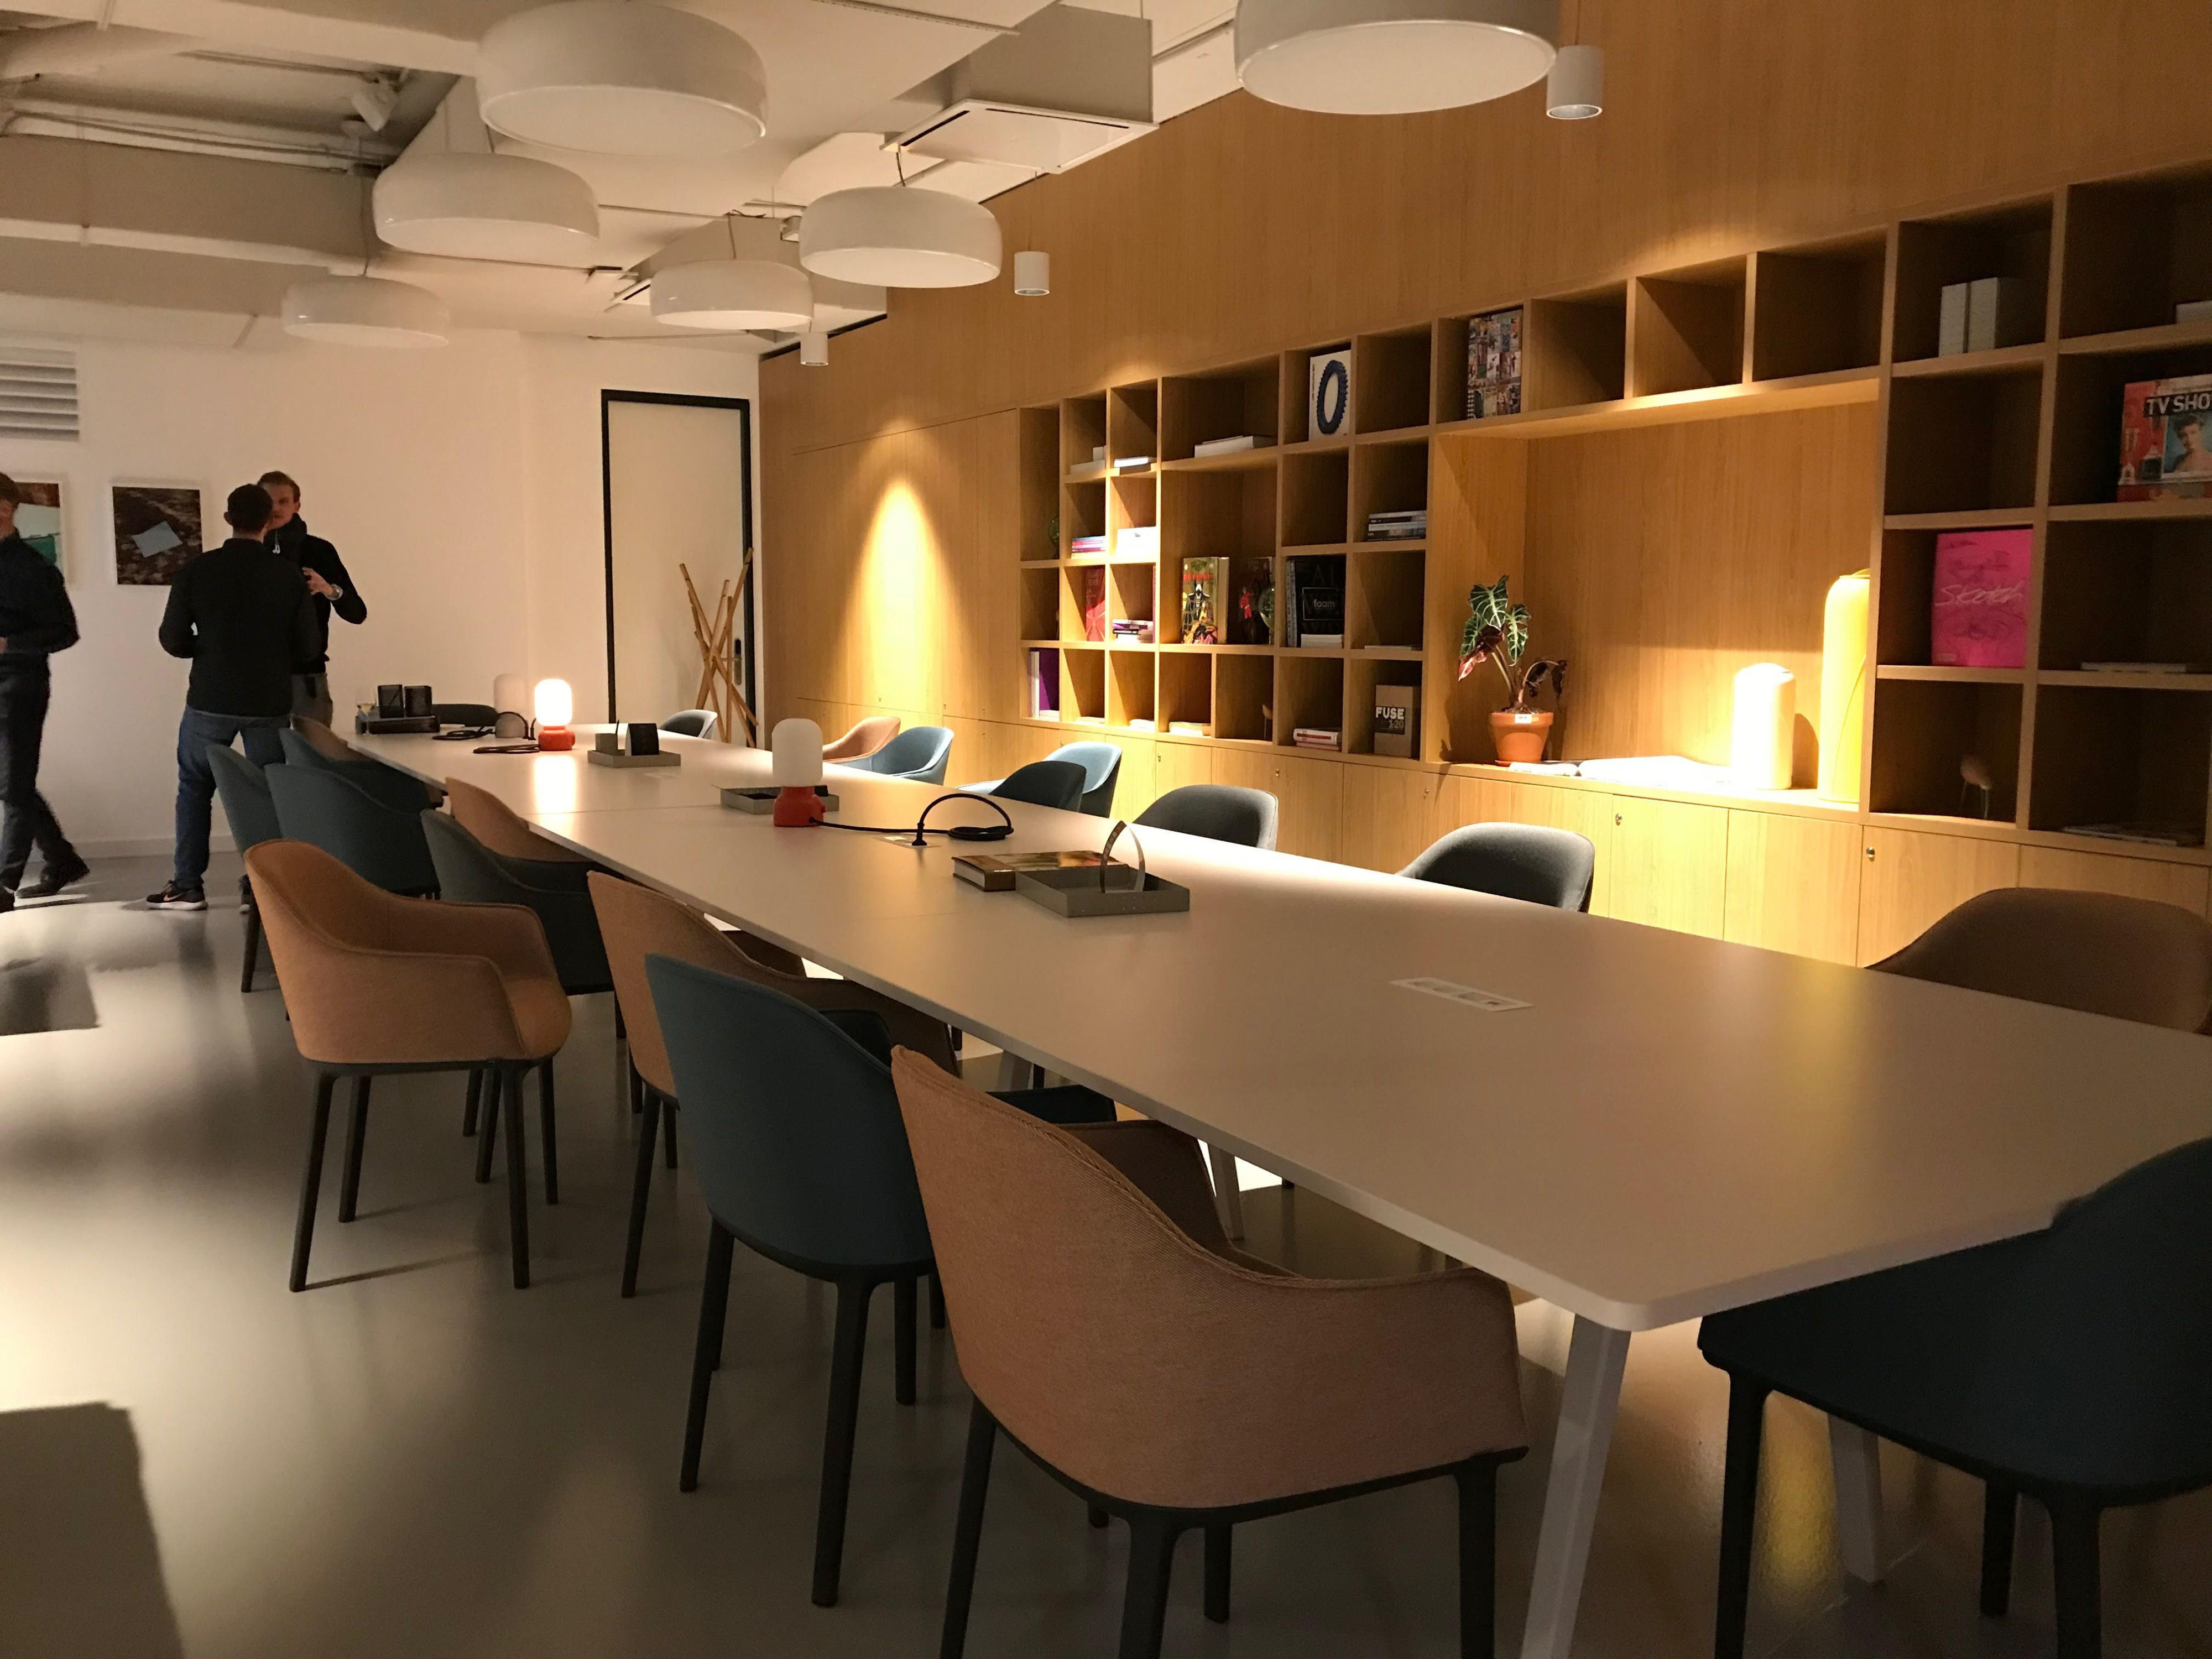 Una sala de reuniones de Spaces, una de las empresas de 'coworking' en Barcelona / CG